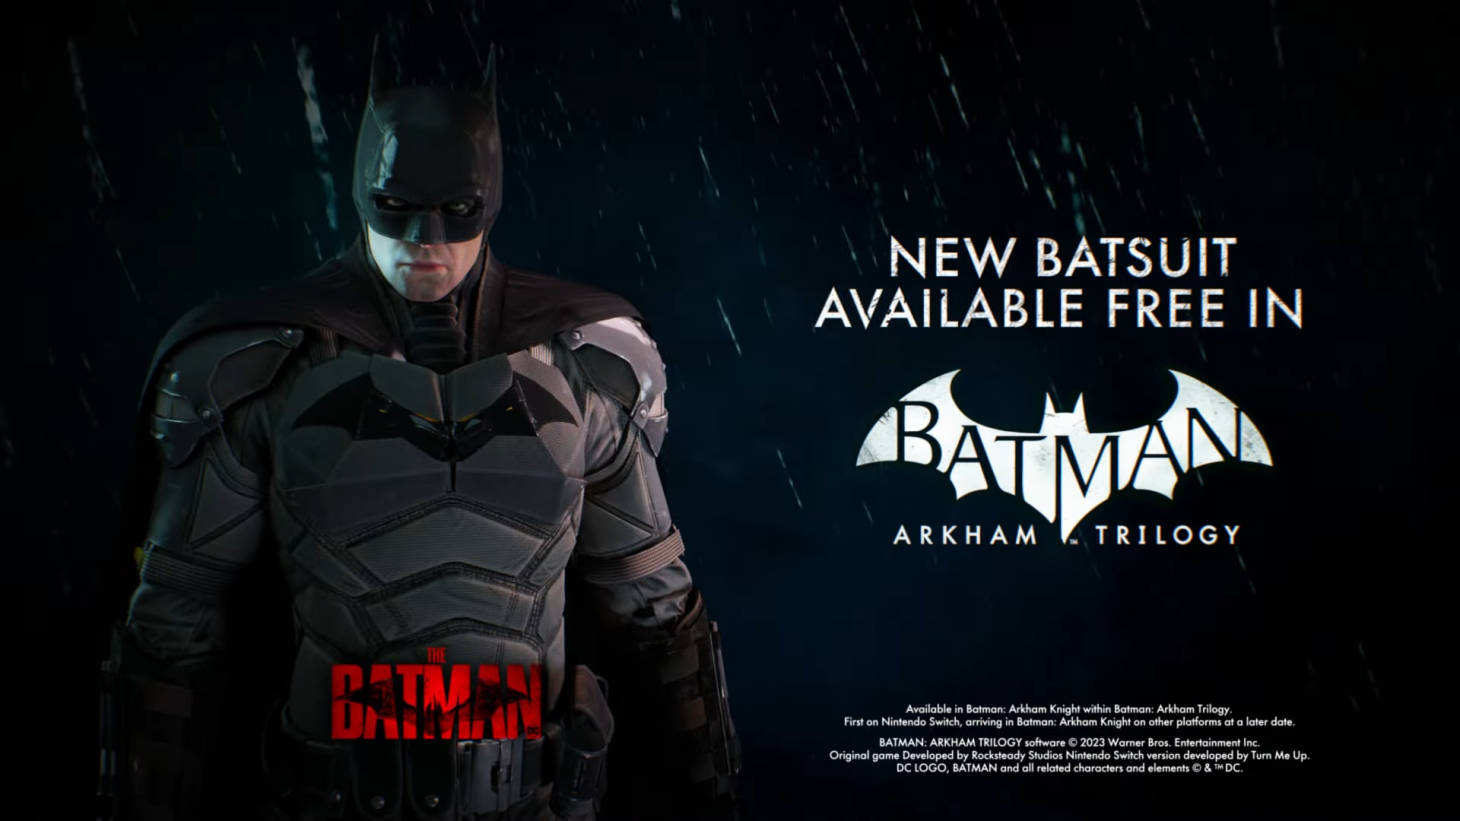 https://www.gameinformer.com/sites/default/files/styles/full/public/2023/11/28/c4d3ccd4/batman_arkham_trilogy_the_batman_suit.png